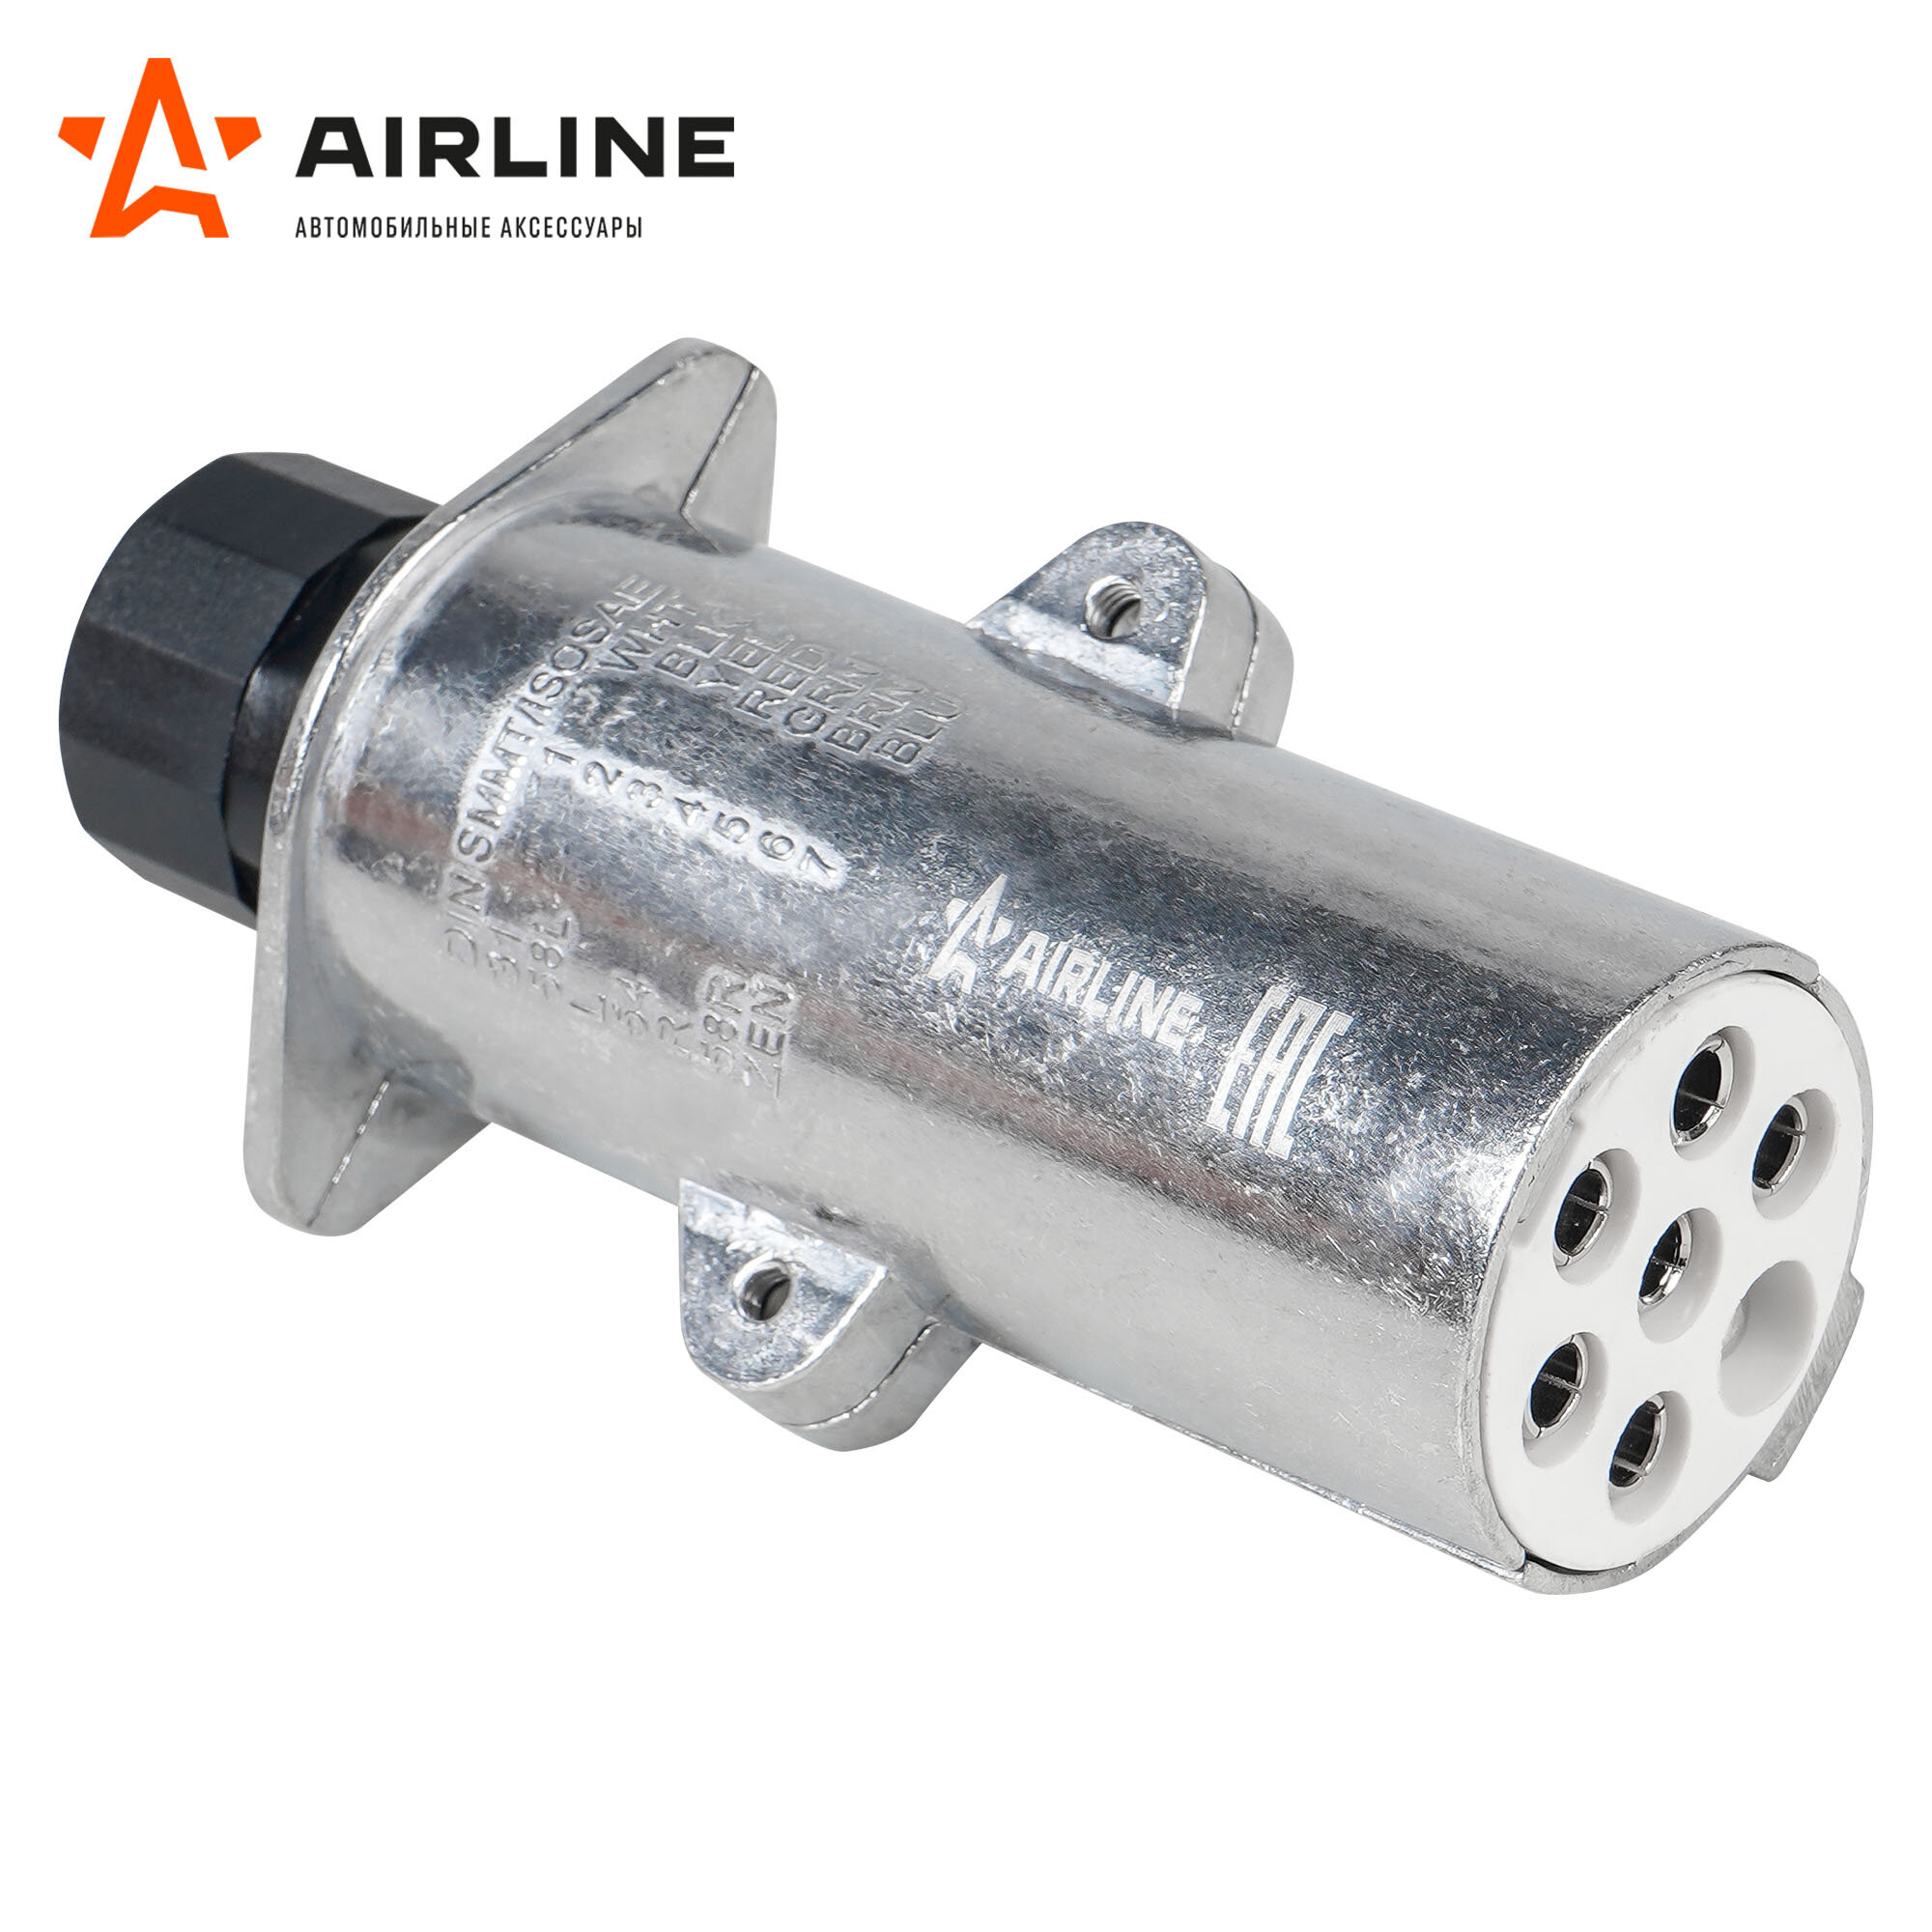 Вилка прицепа/тягача 24В тип-S 7 контактов металл (гайка) ATE-43 AIRLINE